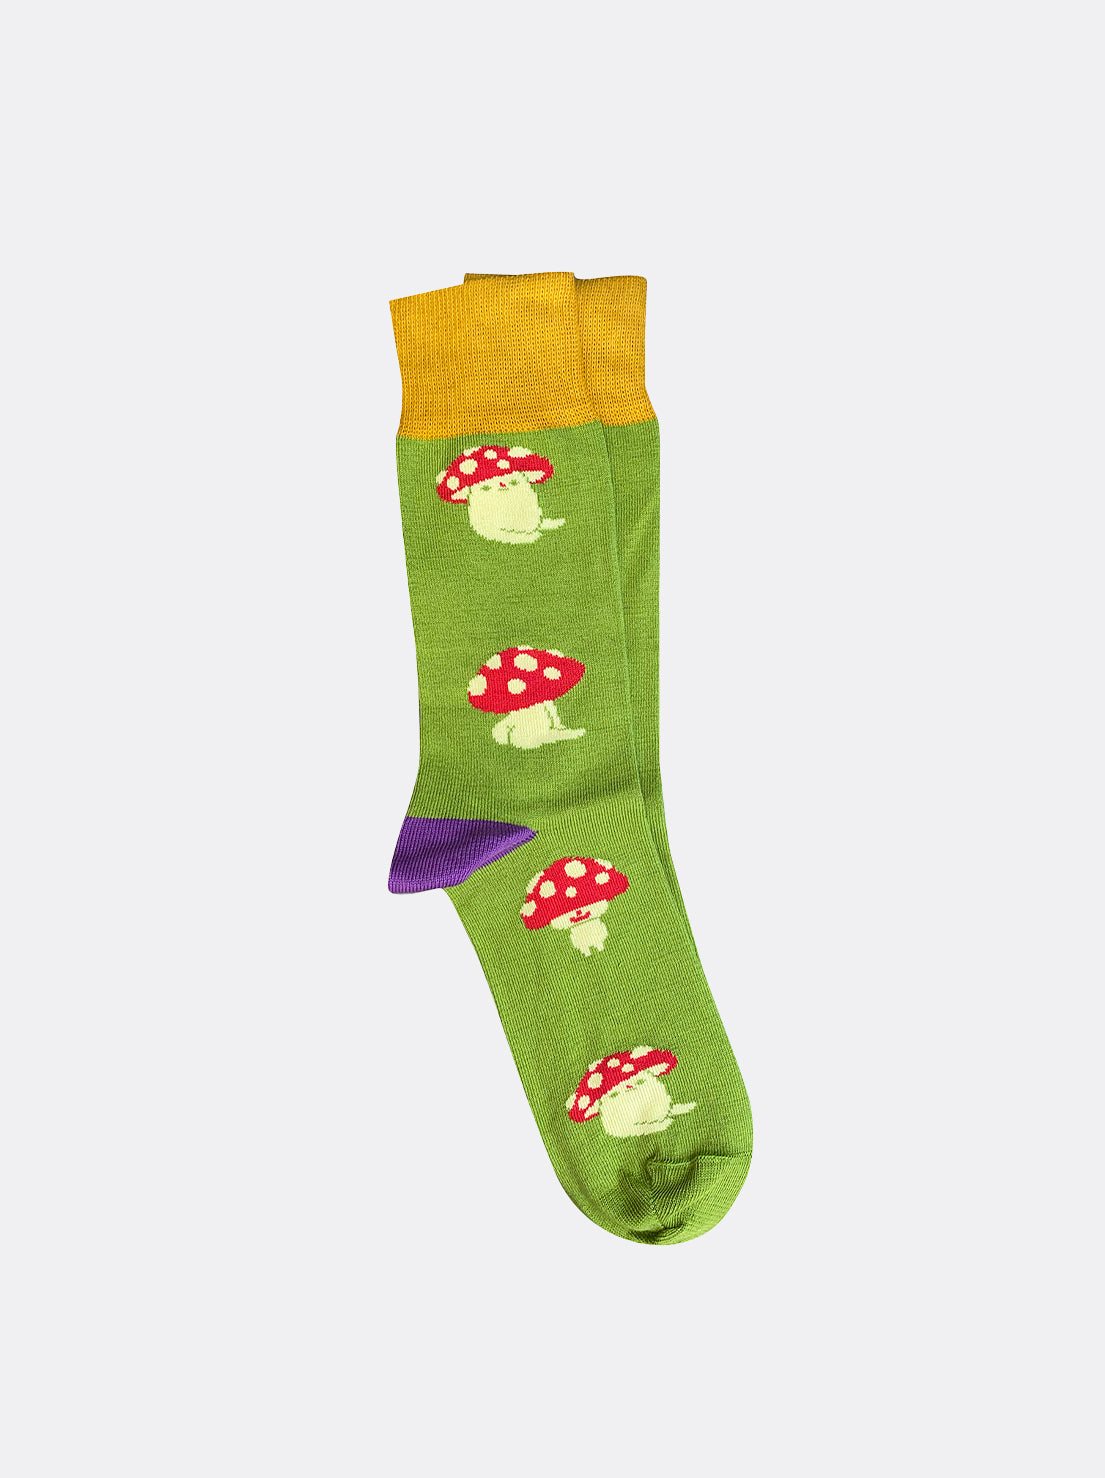 Tightology - Mushroom Socks - Lime